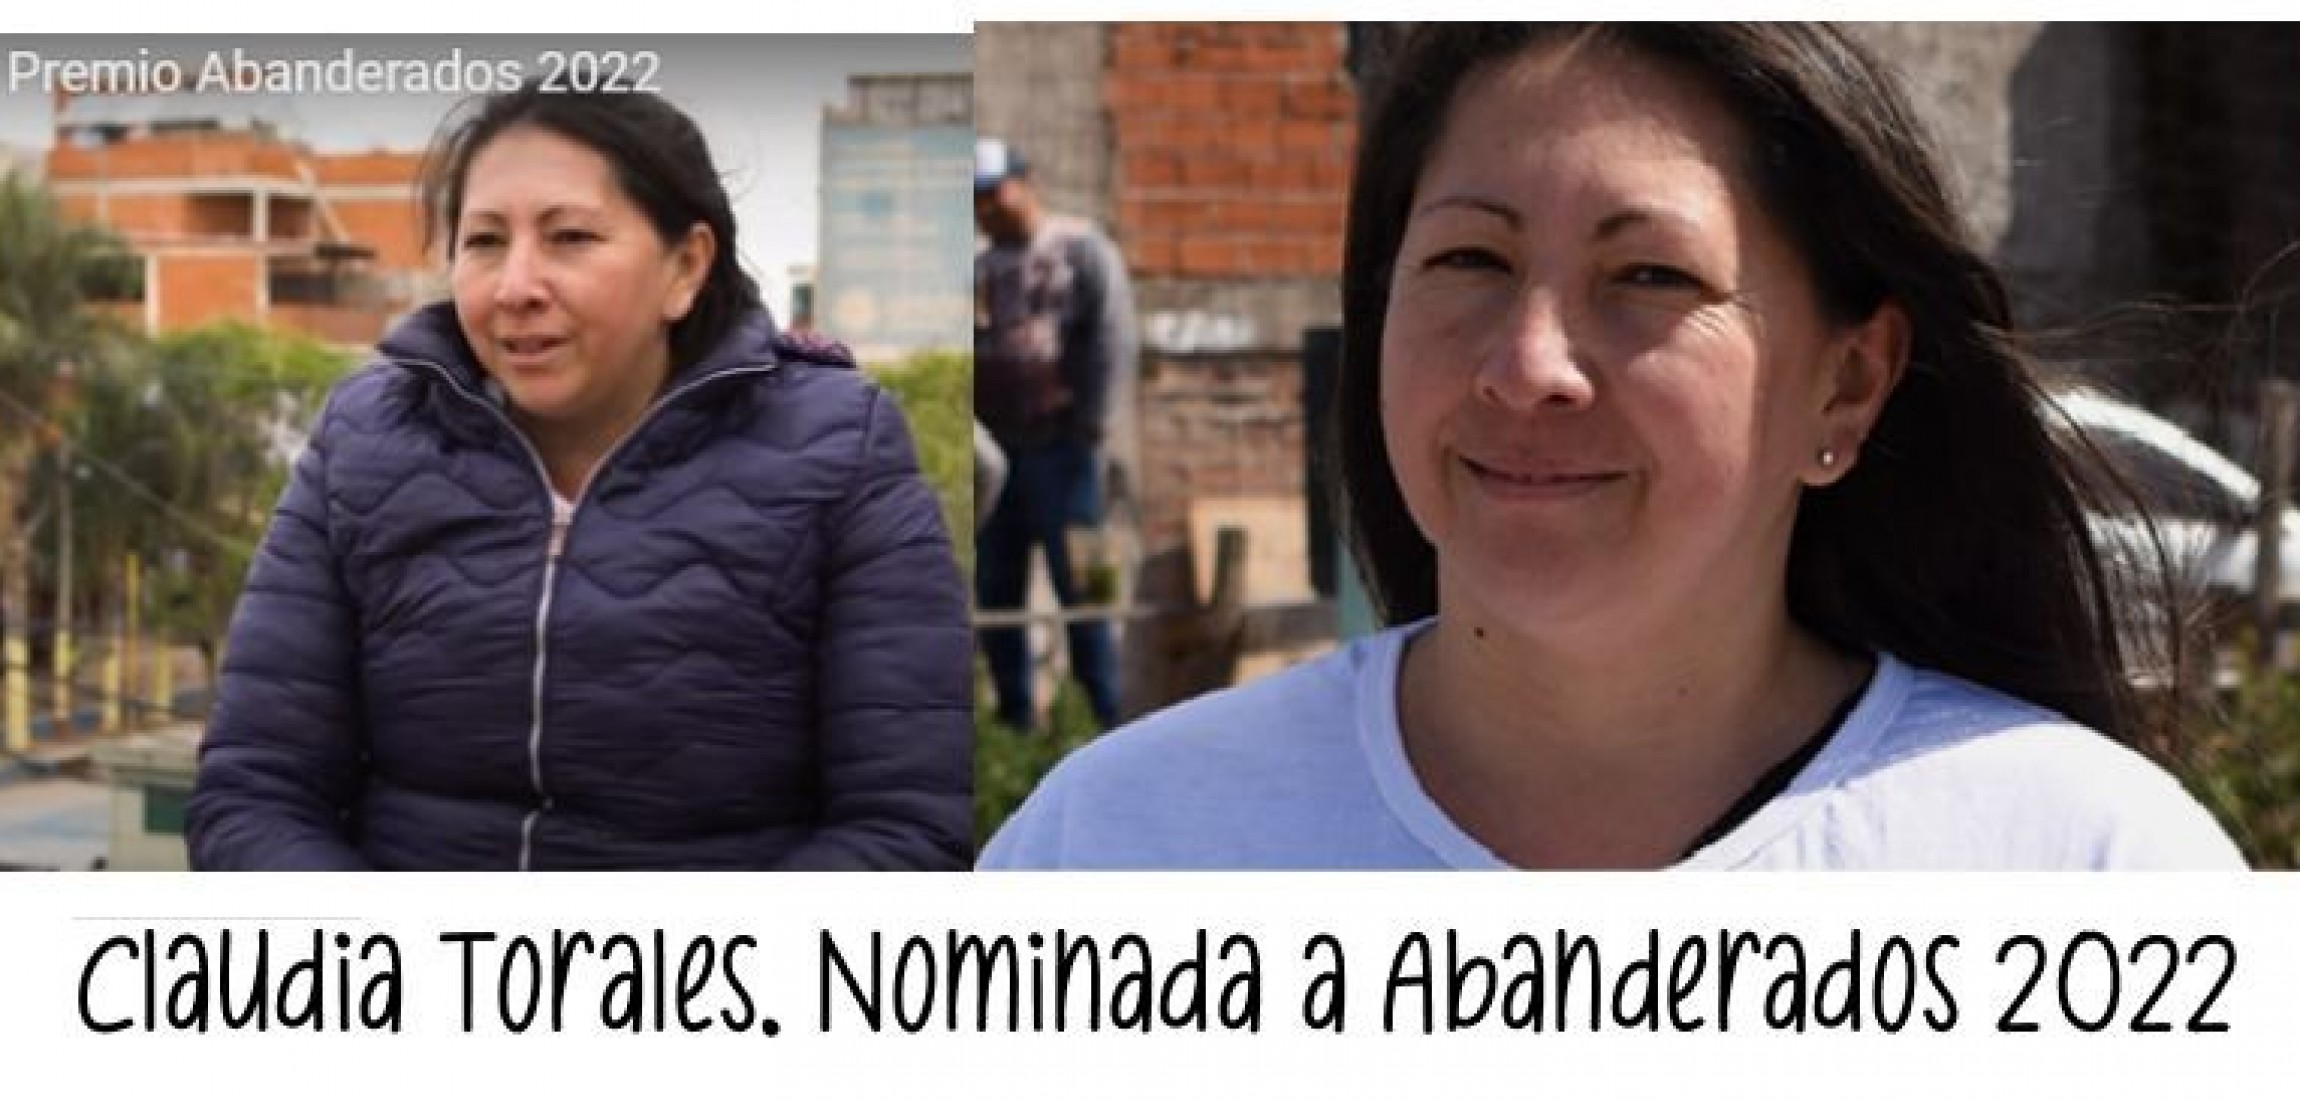 Claudia Torales  está nominada  al premio ABANDERADOS 2022. Ella y un grupo de voluntarios brindan contención a traves de RINCON DE LA FAMILIA